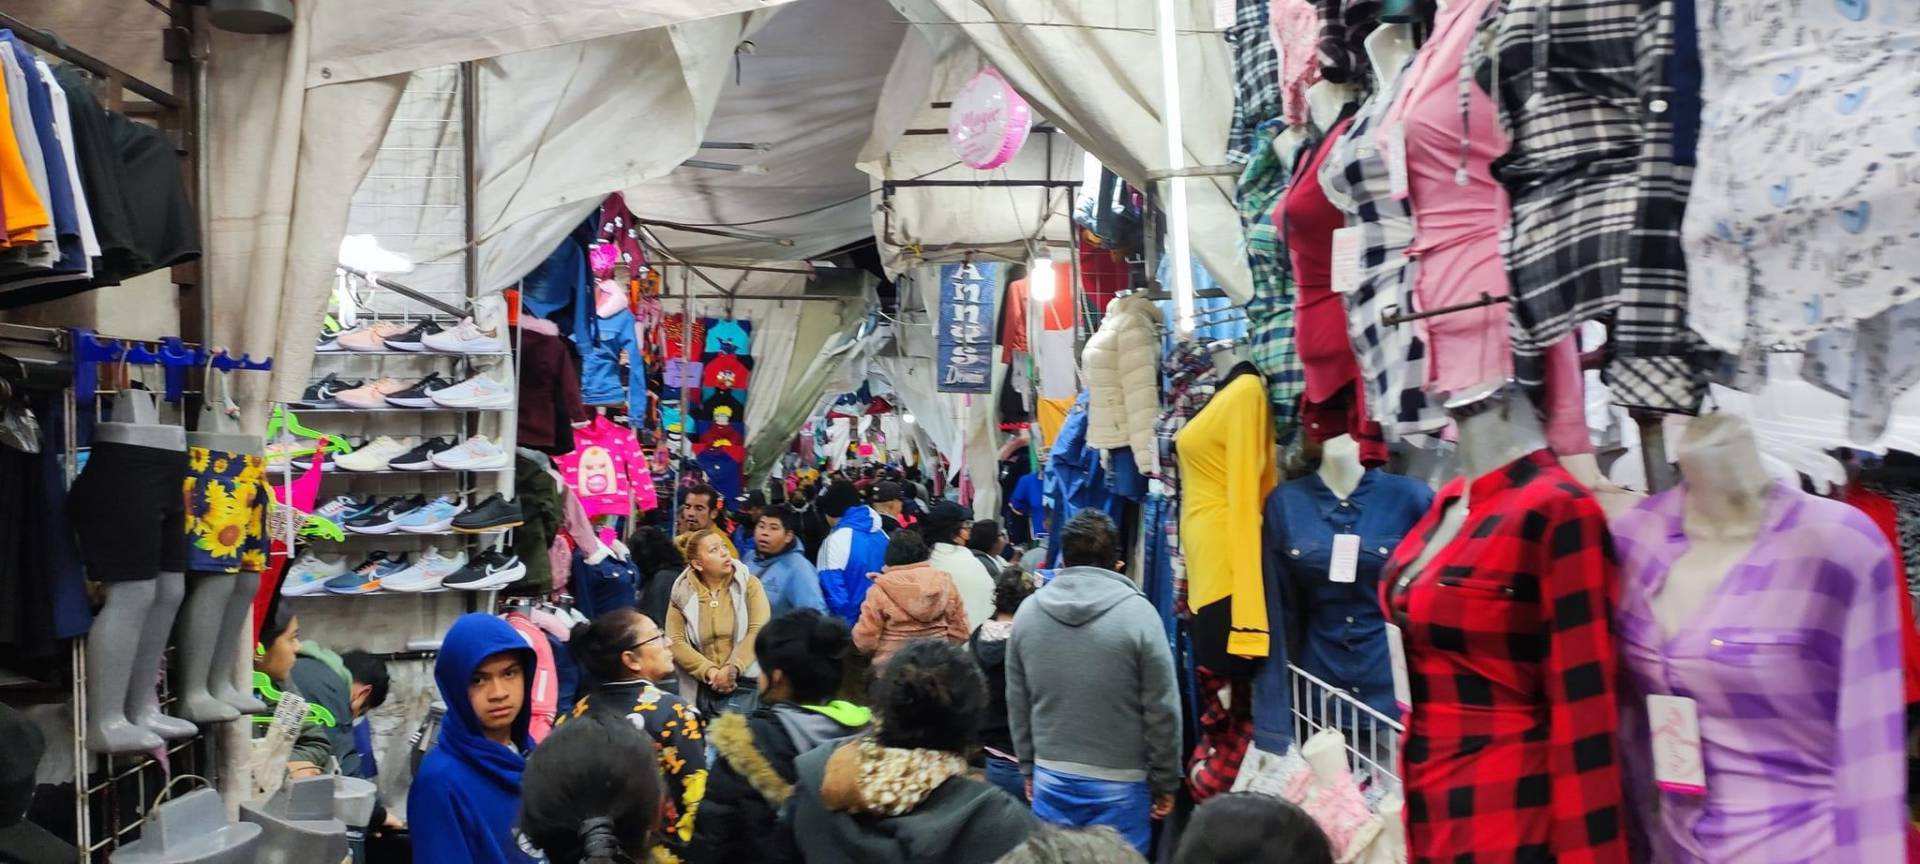 Mercado de ropa en Chiconcuac abarrotado en víspera de Navidad